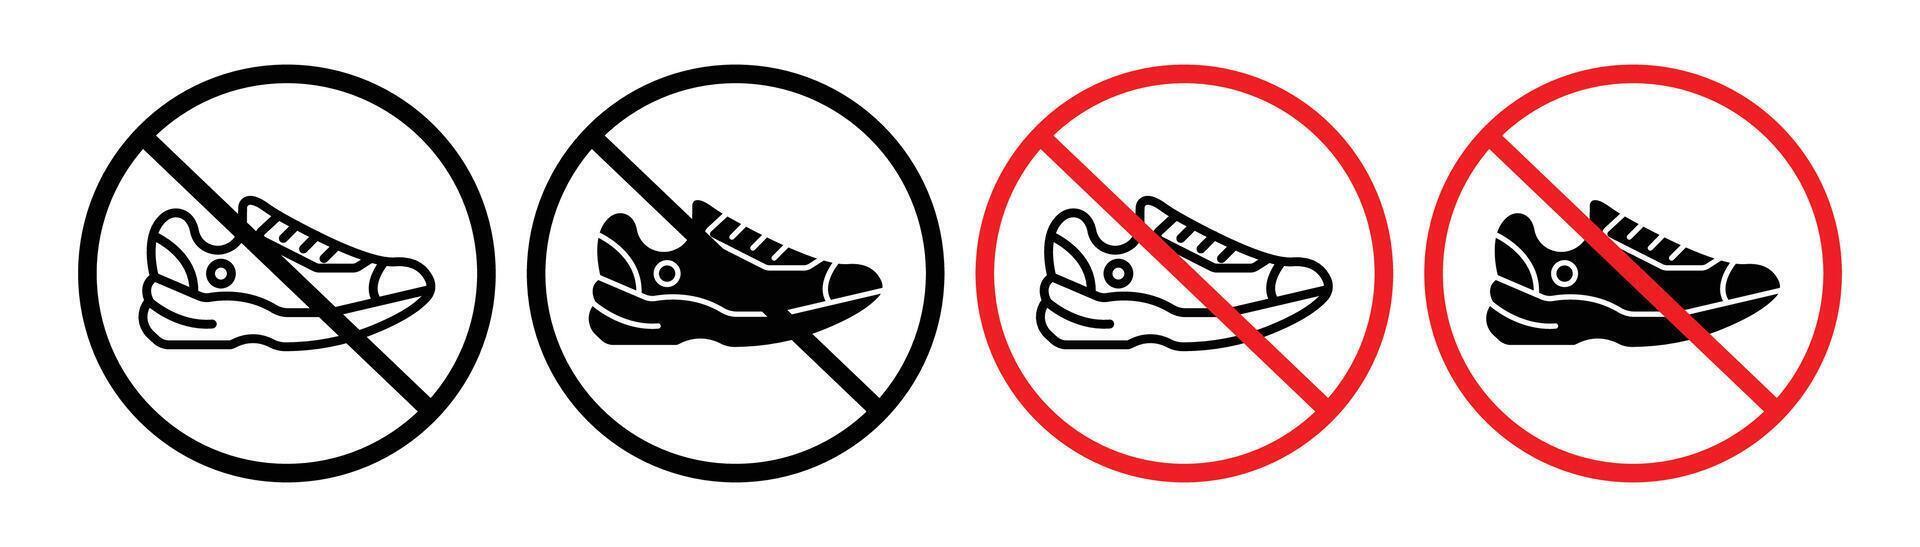 Nee schoenen teken vector